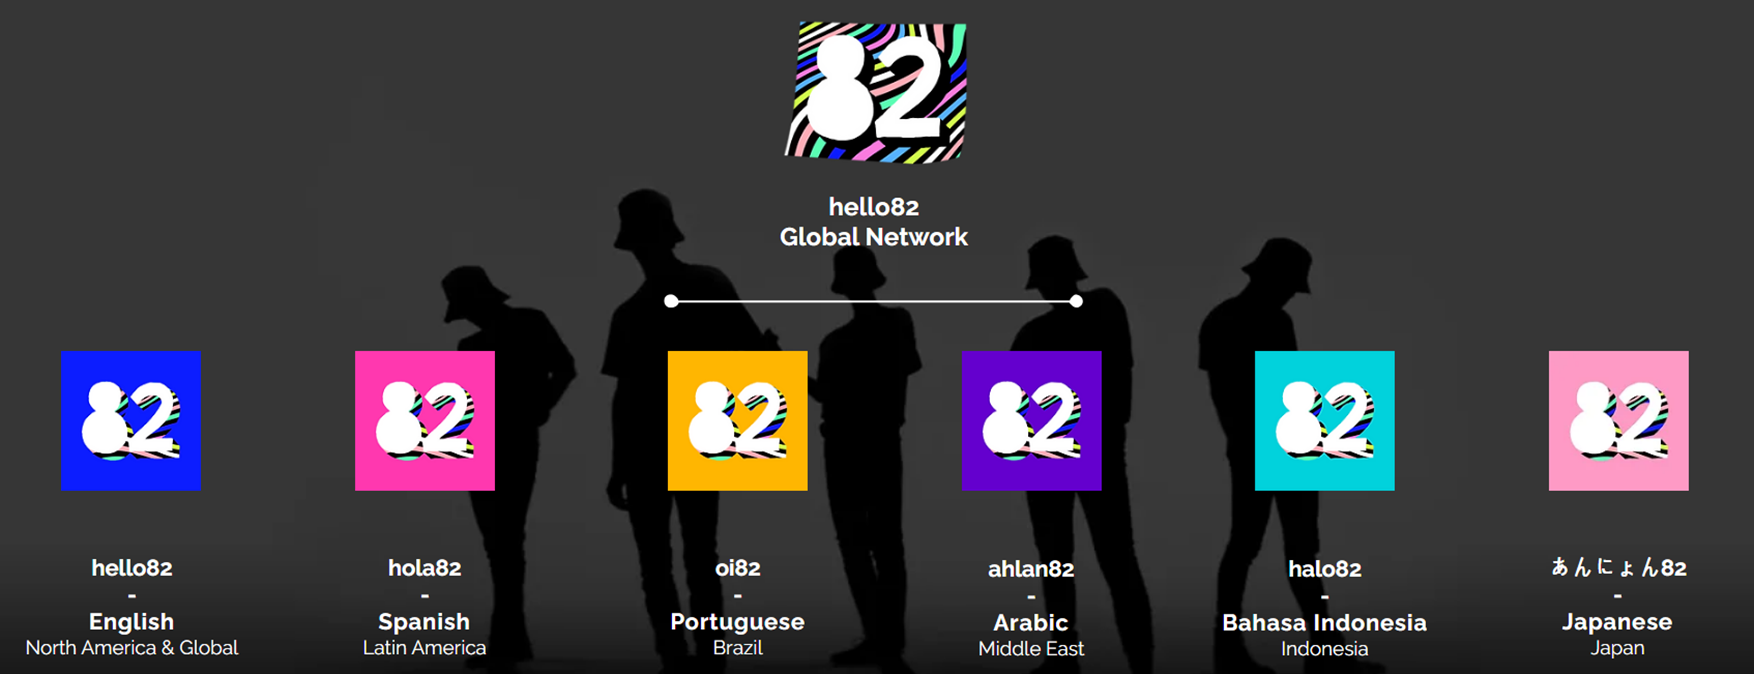 hello82는 6개의 각 지역별 채널을 보유하고 있다. 각 채널은 글로벌 채널 hello82에 올라오는 콘텐츠 중 해당 문화권에 맞는 콘텐츠를 위주로 업로드를 진행하고 있다. 